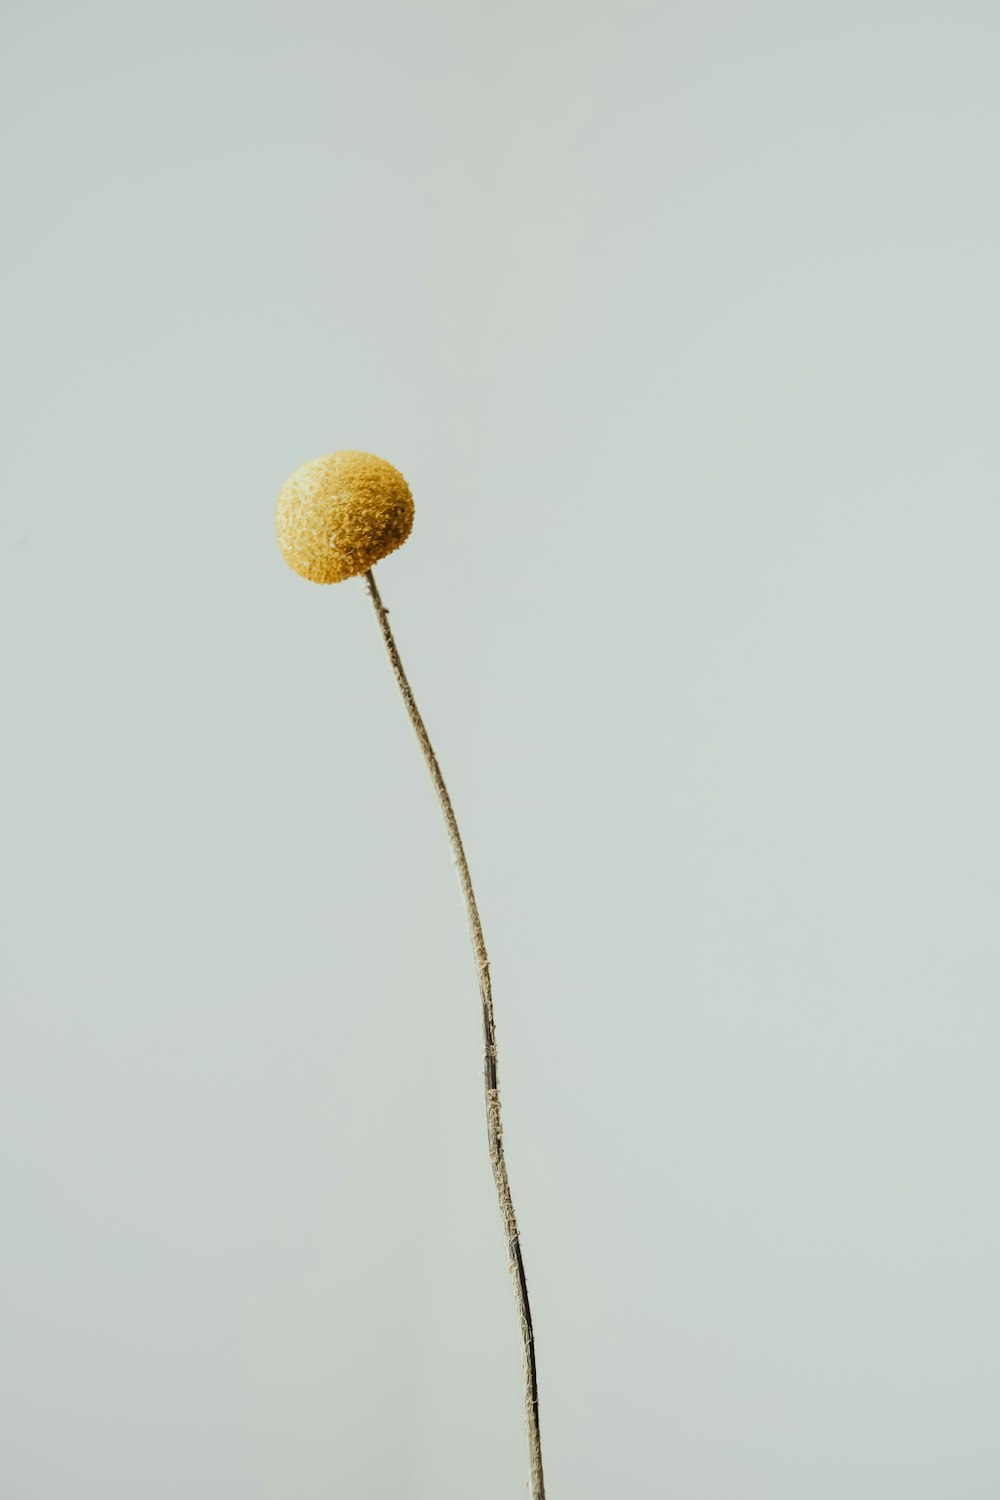 eine Pflanze mit einer gelben Kugel darauf